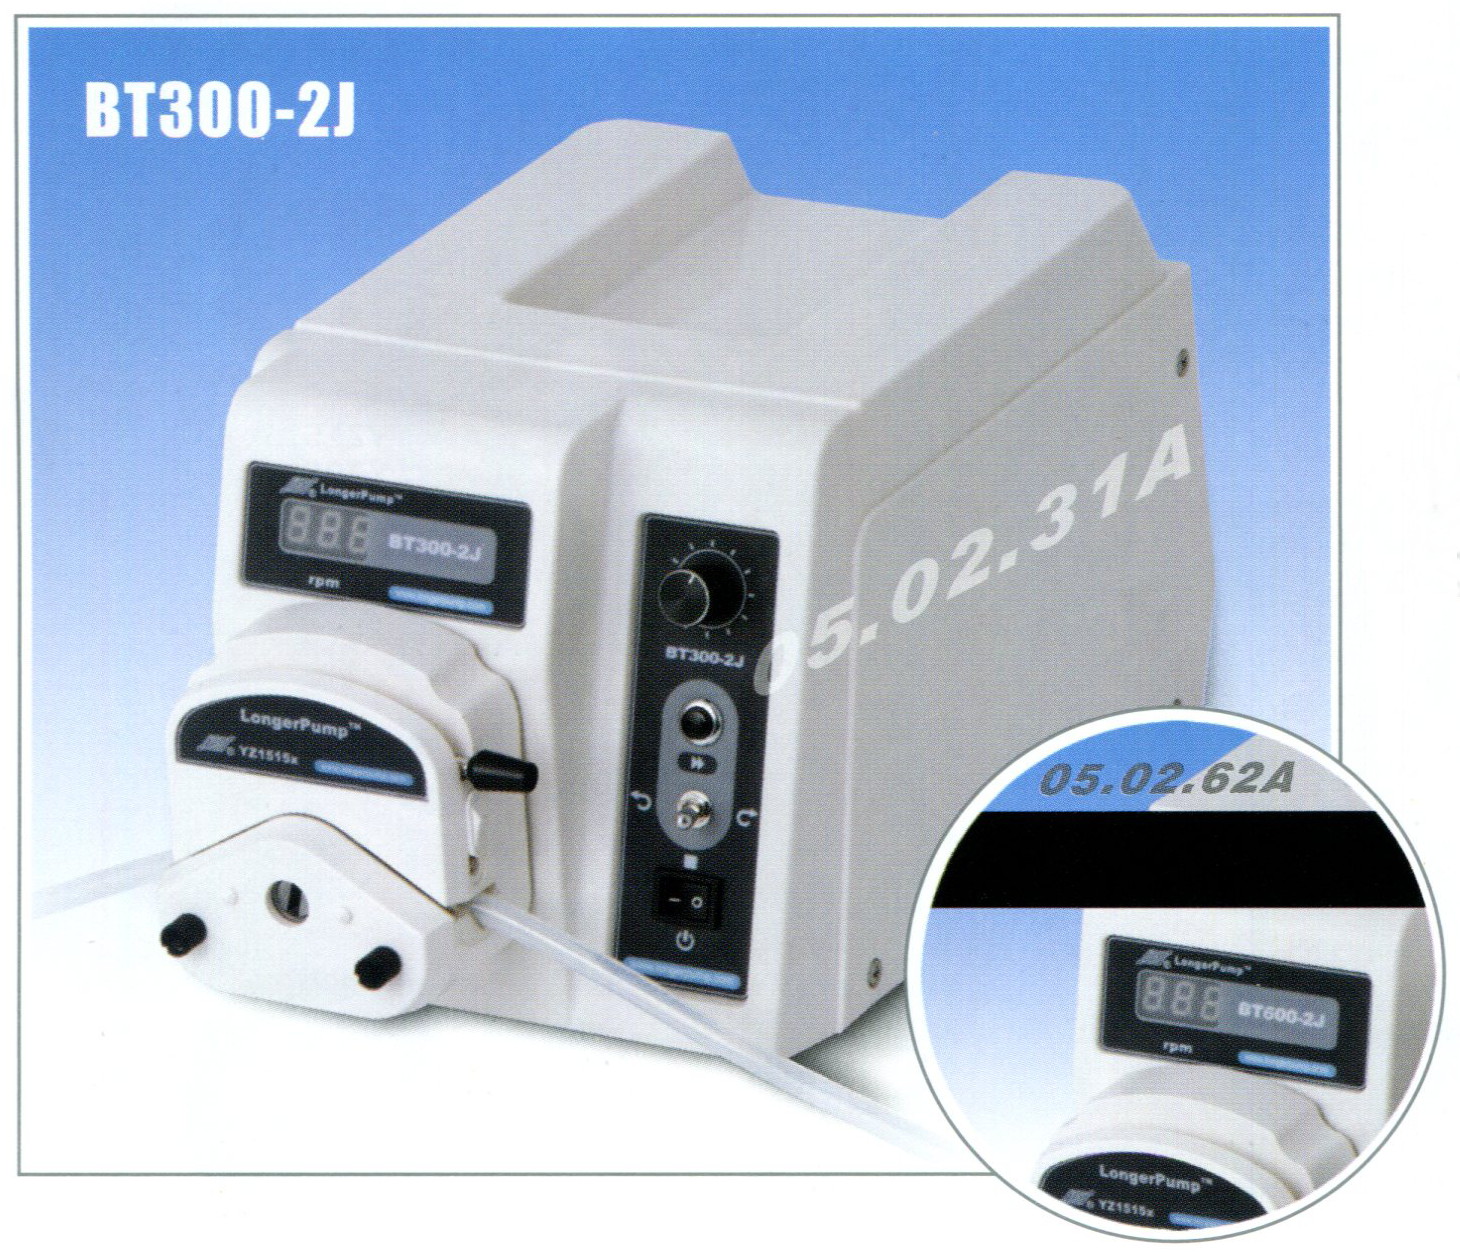 Longer pump, Peristaltic pump, BT300-2J, BT600-2J